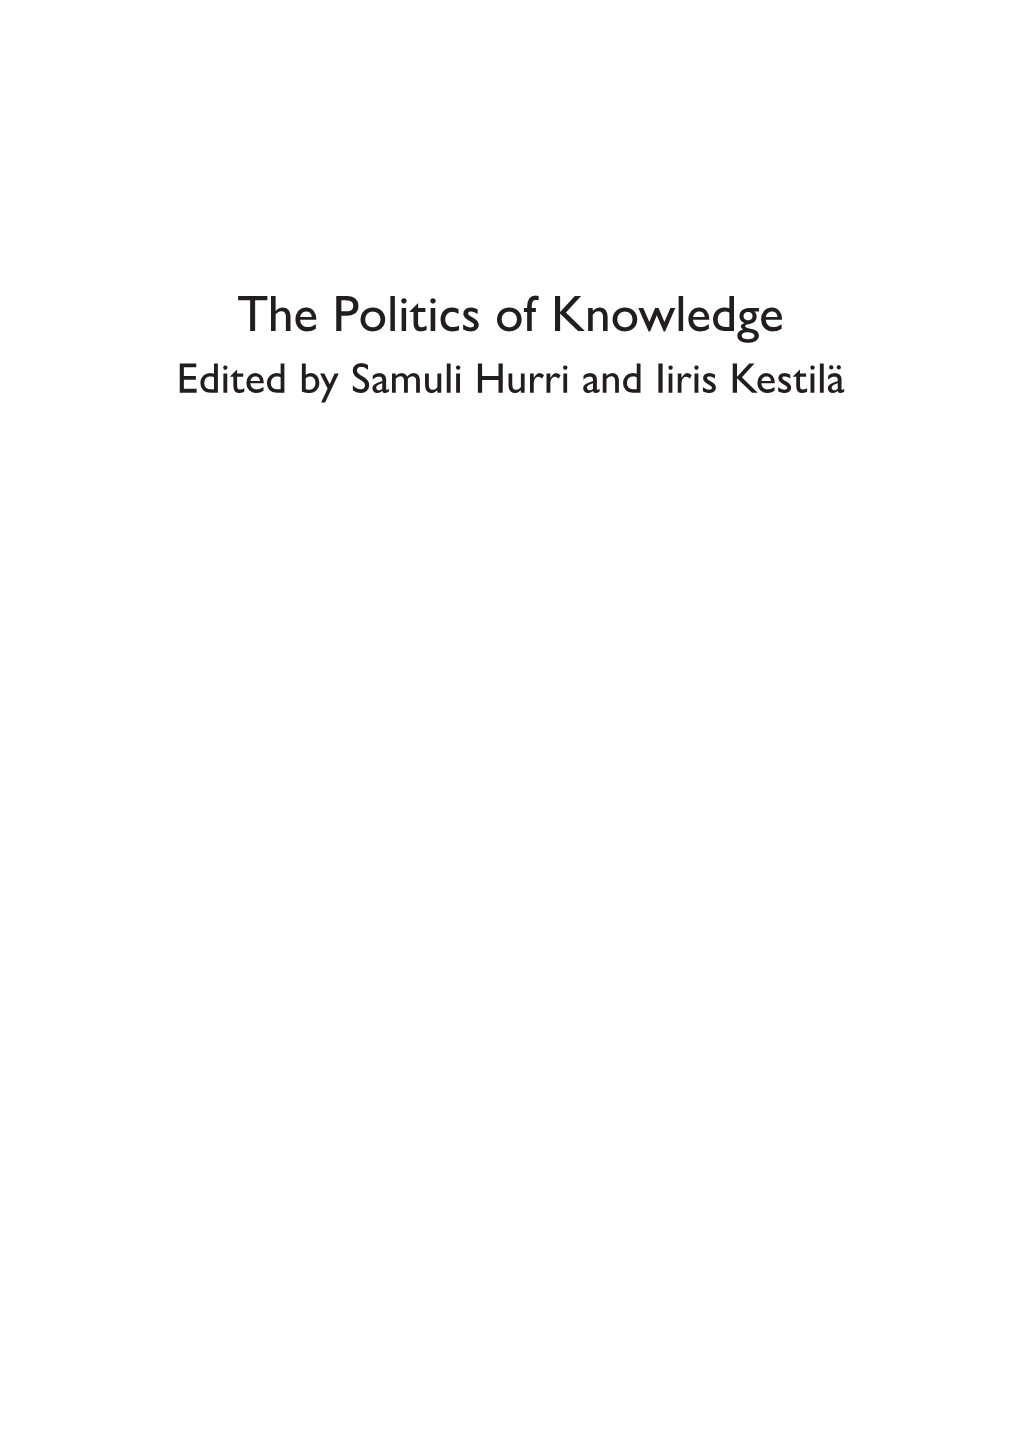 The Politics of Knowledge Edited by Samuli Hurri and Iiris Kestilä ______